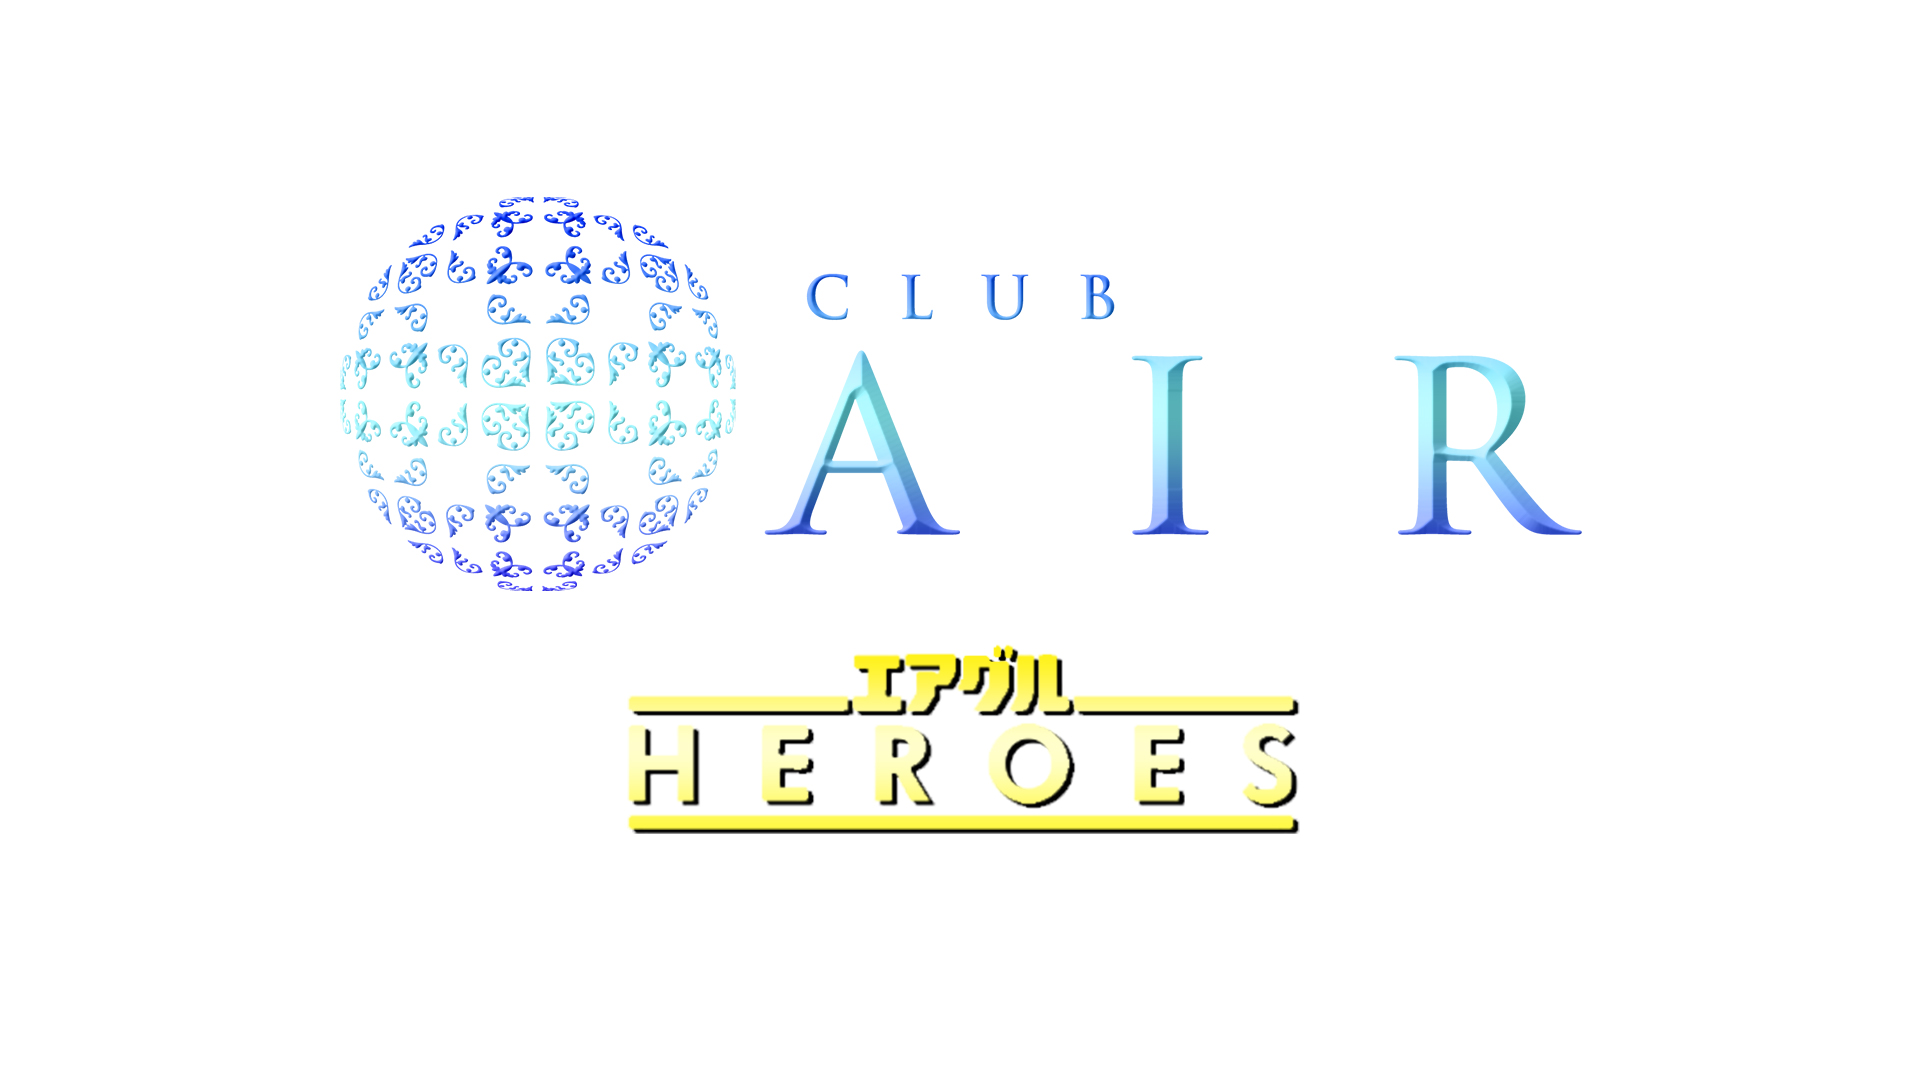 エアグルHEROES　Side Club AIR【Club AIR】